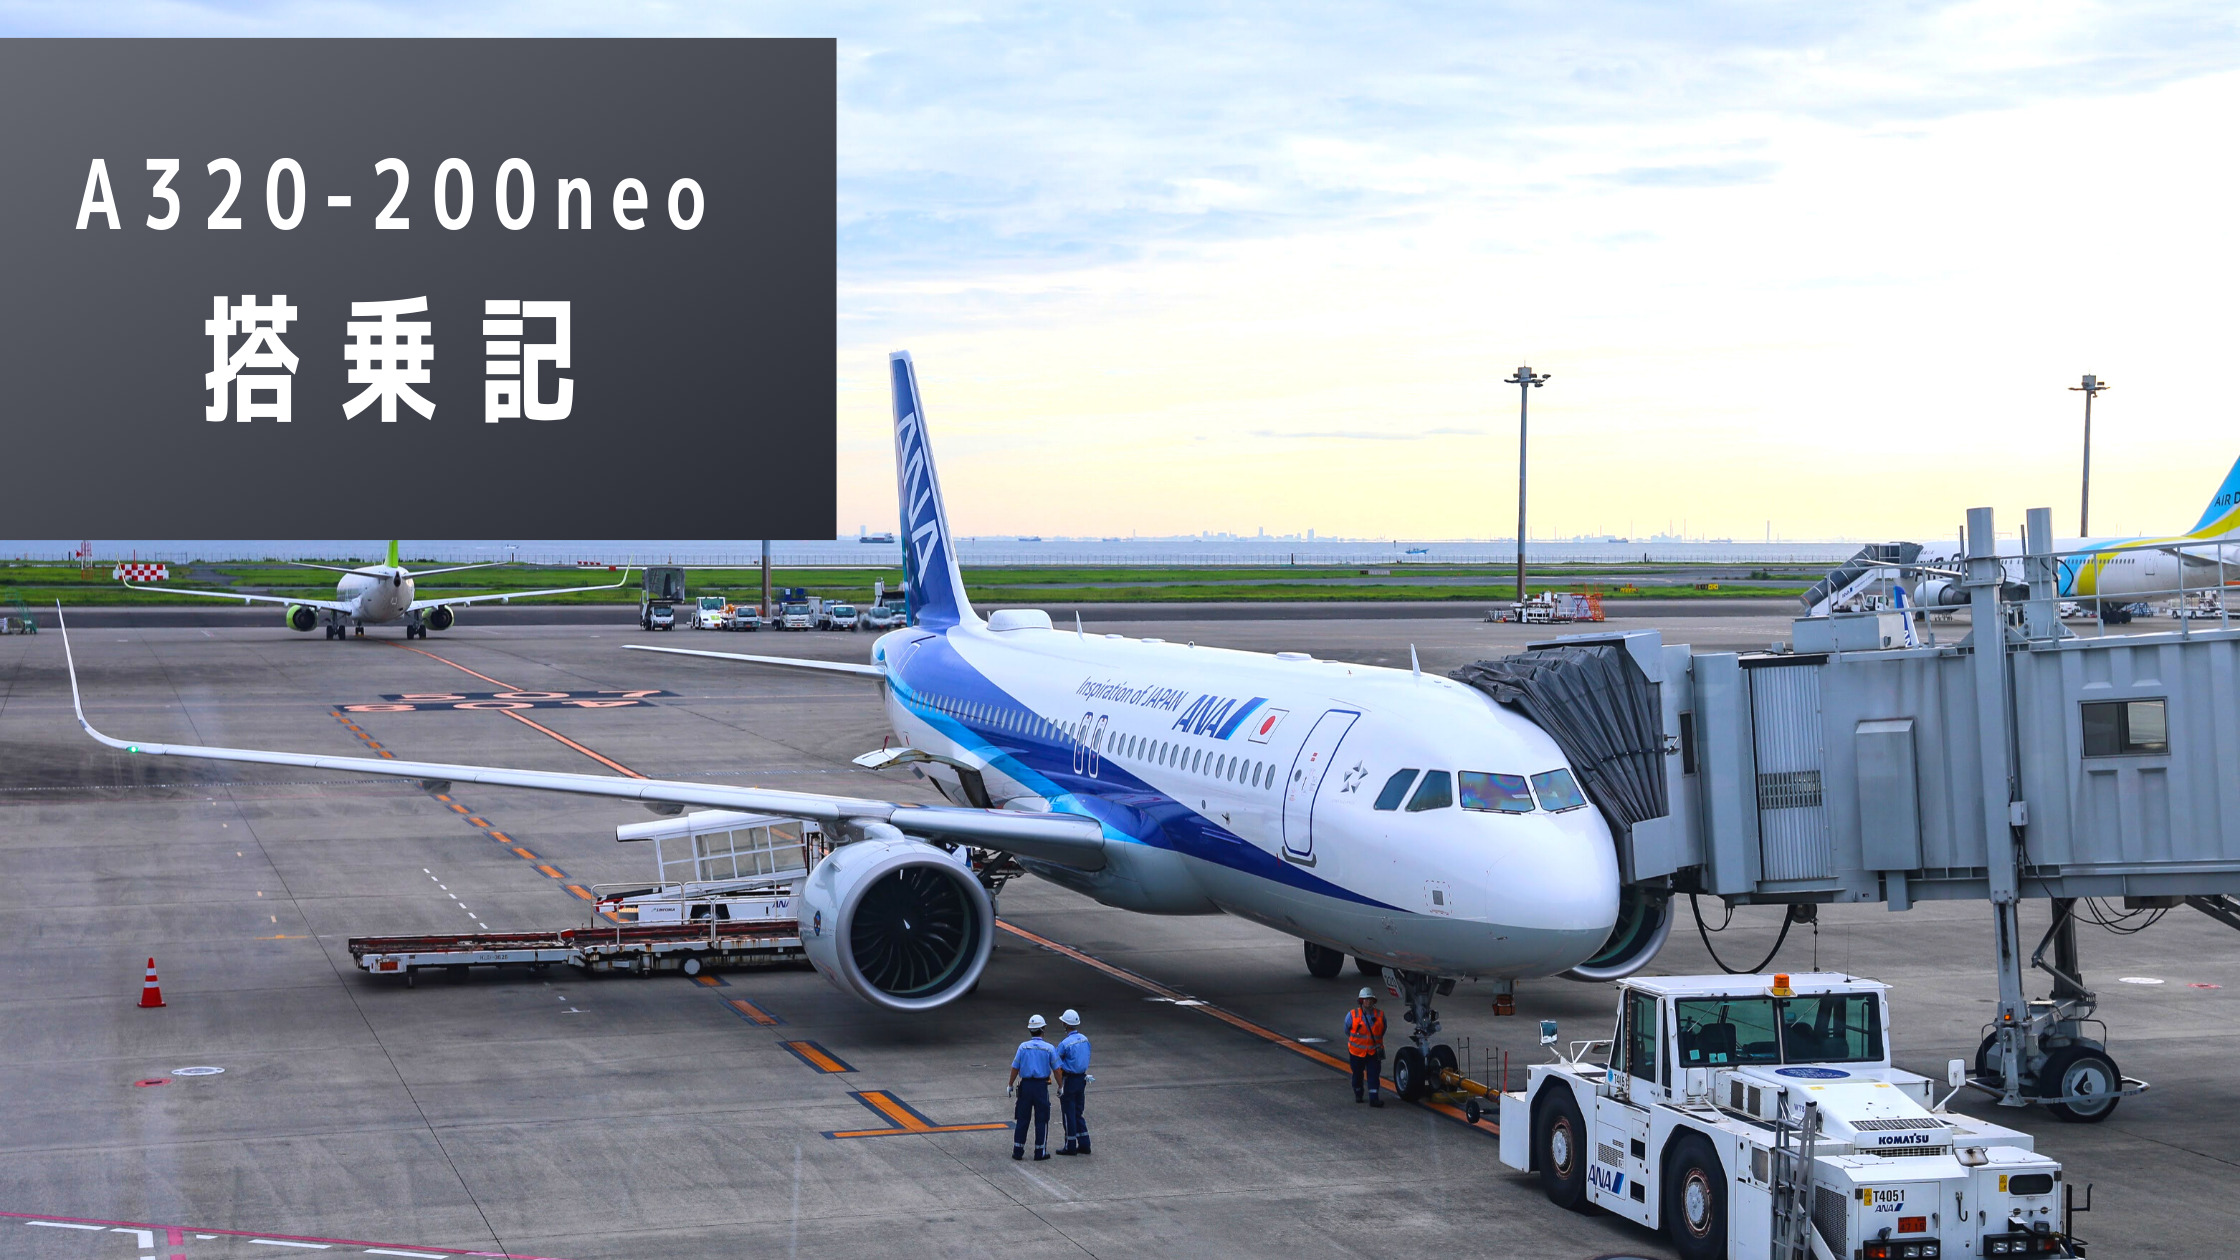 羽田 秋田 全日本空輸 Ana A3 0neo搭乗記 コロナ禍で国内路線運用中の国際線仕様機の機内設備とは クマフラ